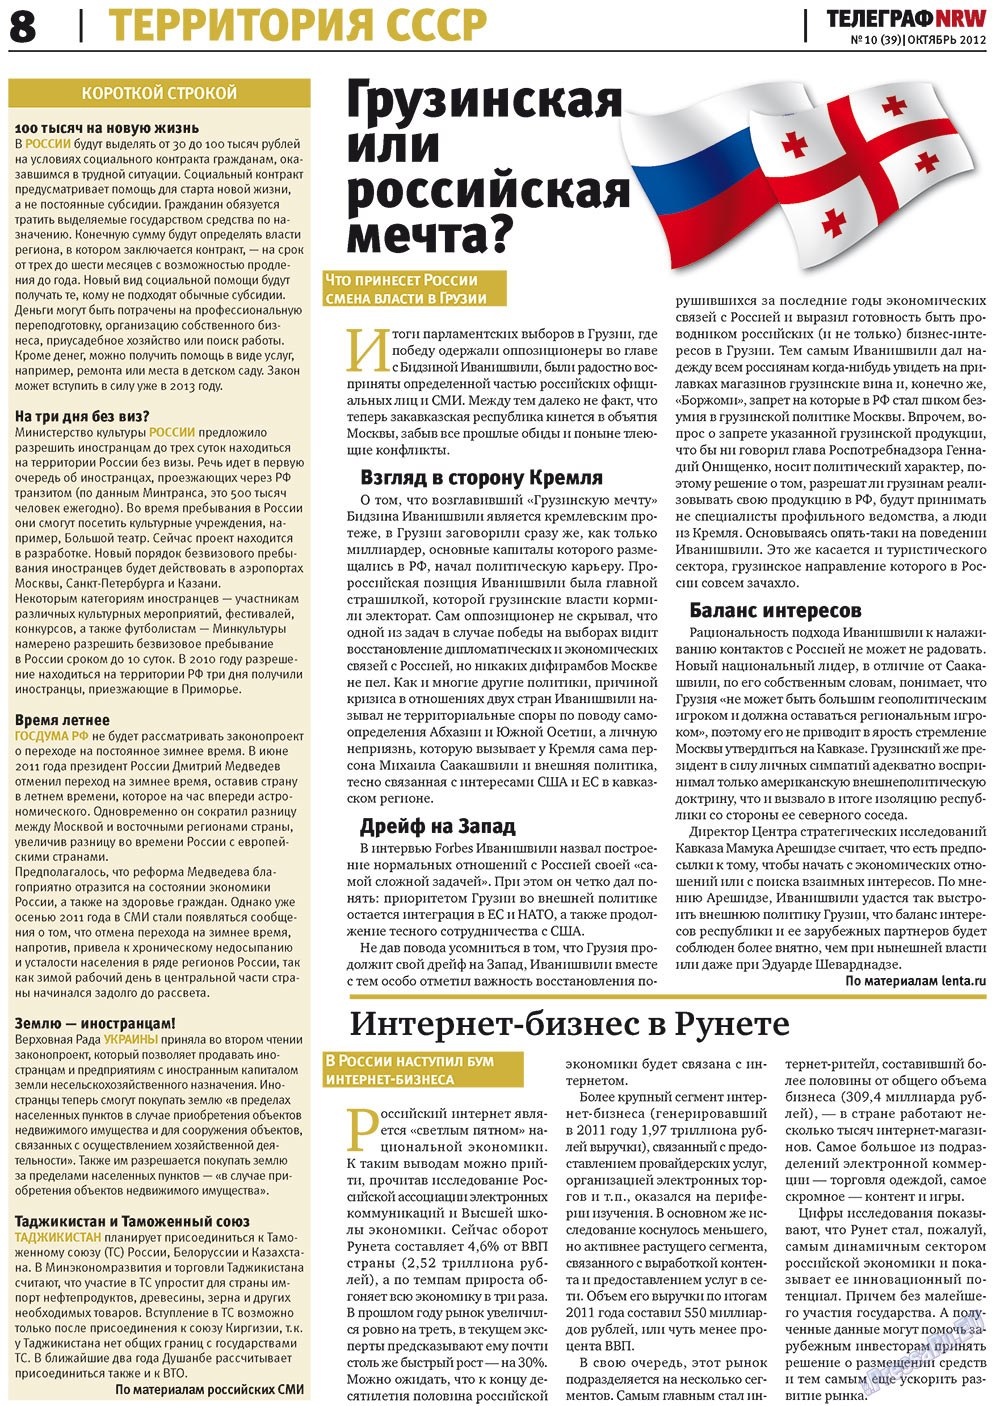 Телеграф NRW (газета). 2012 год, номер 10, стр. 8